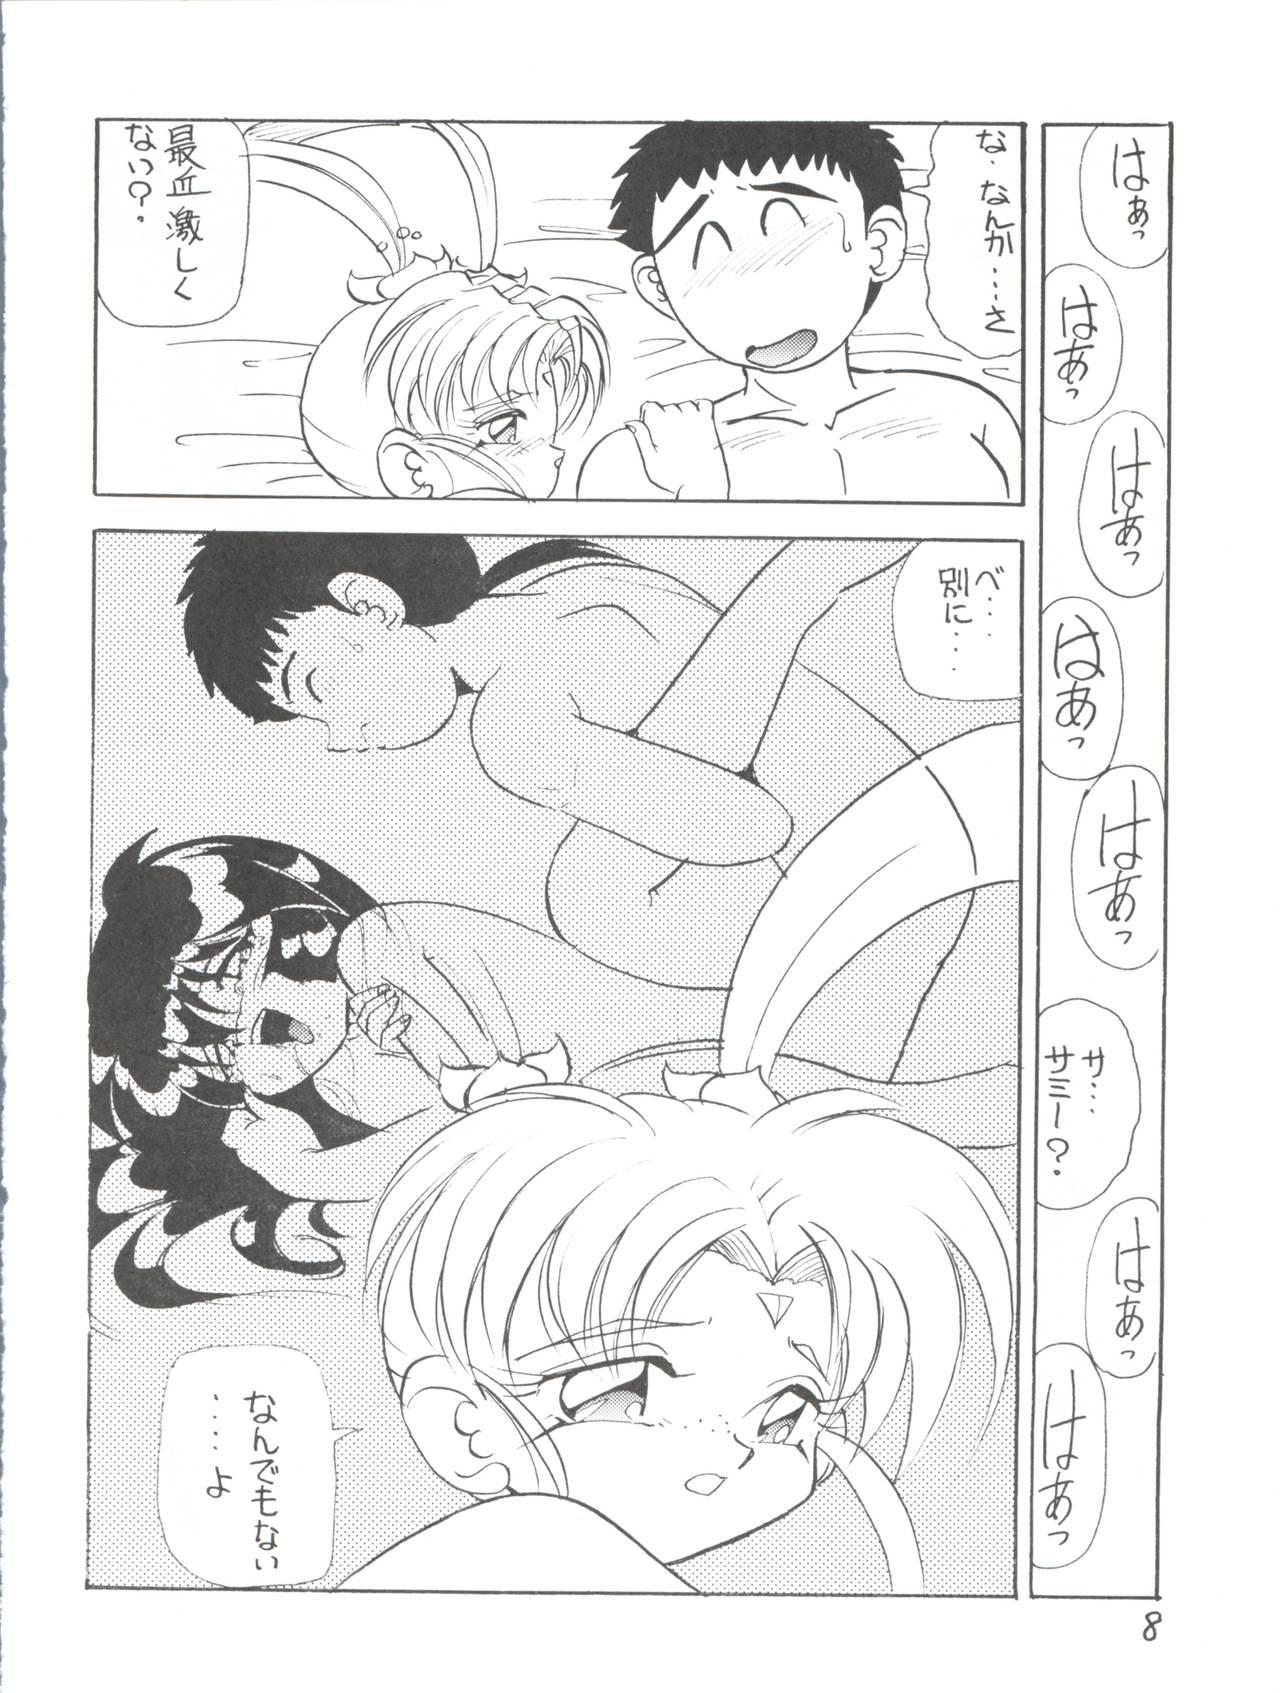 Licking Déjà Vu Ushi no Maki - Pretty sammy Cruising - Page 7